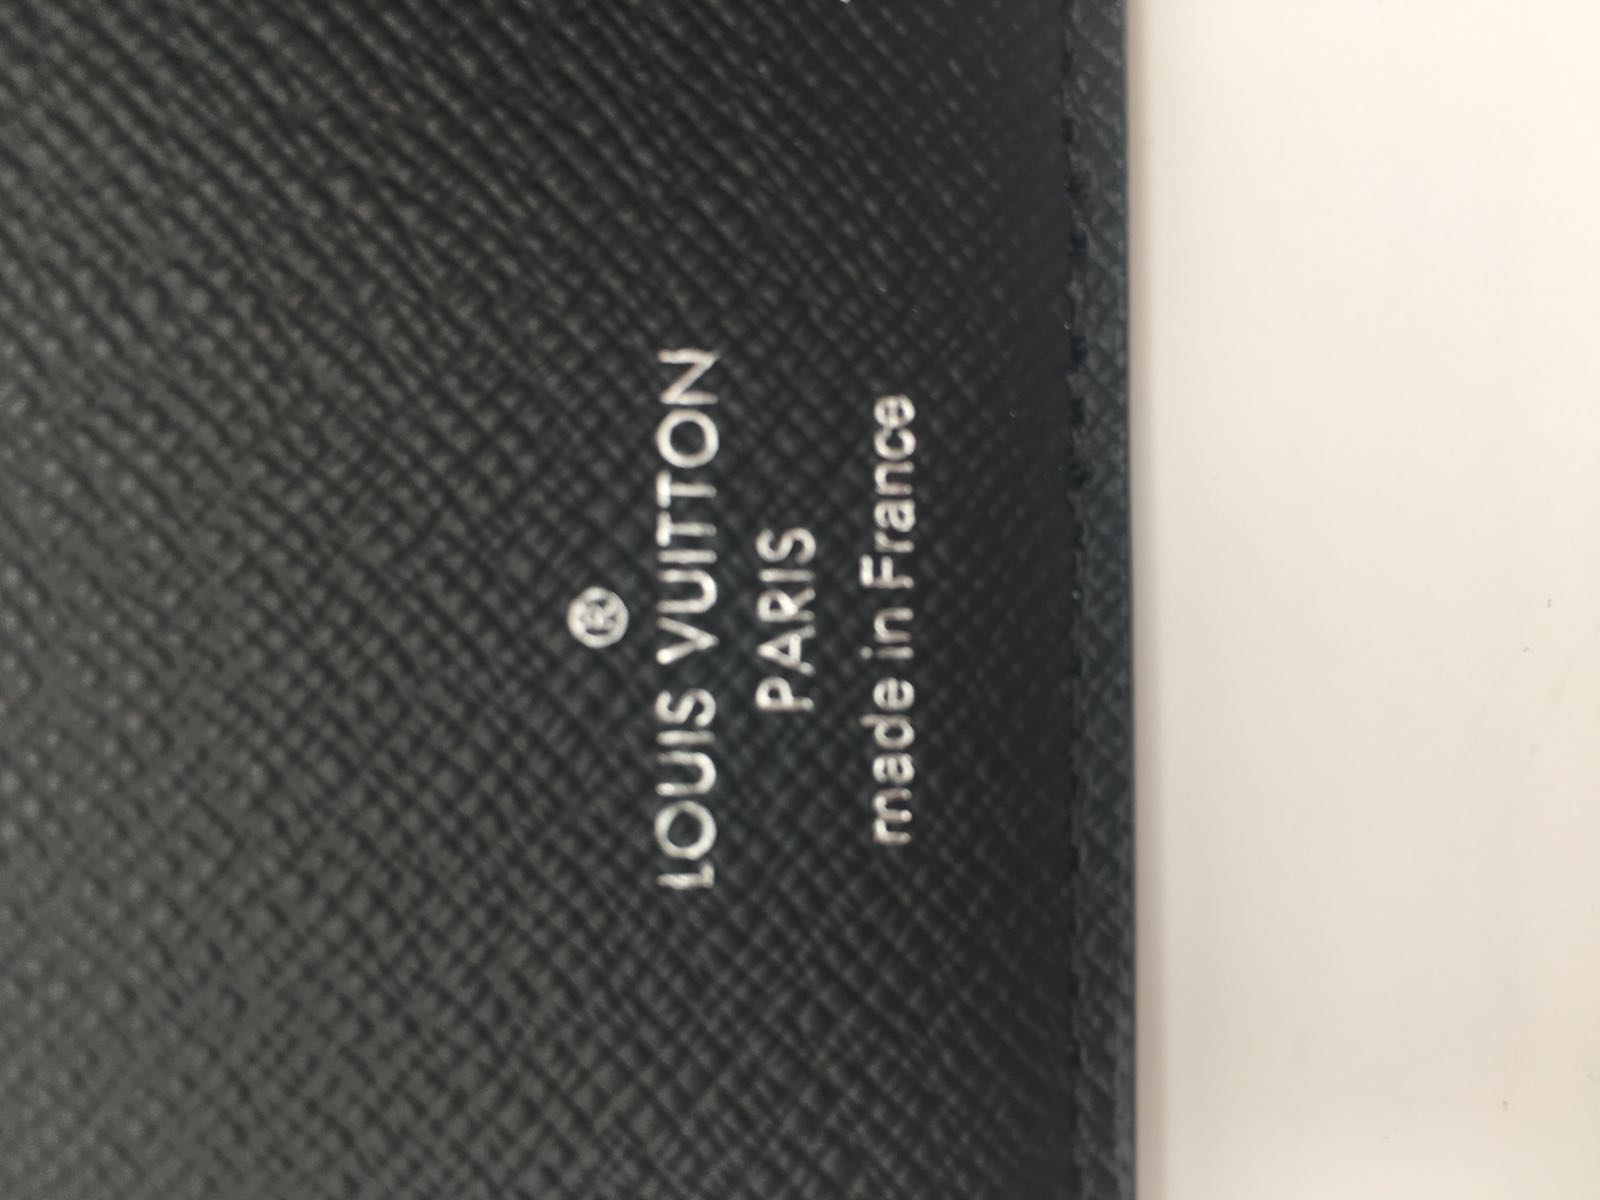 Louis Vuitton, Multiple Wallet Split Monogram